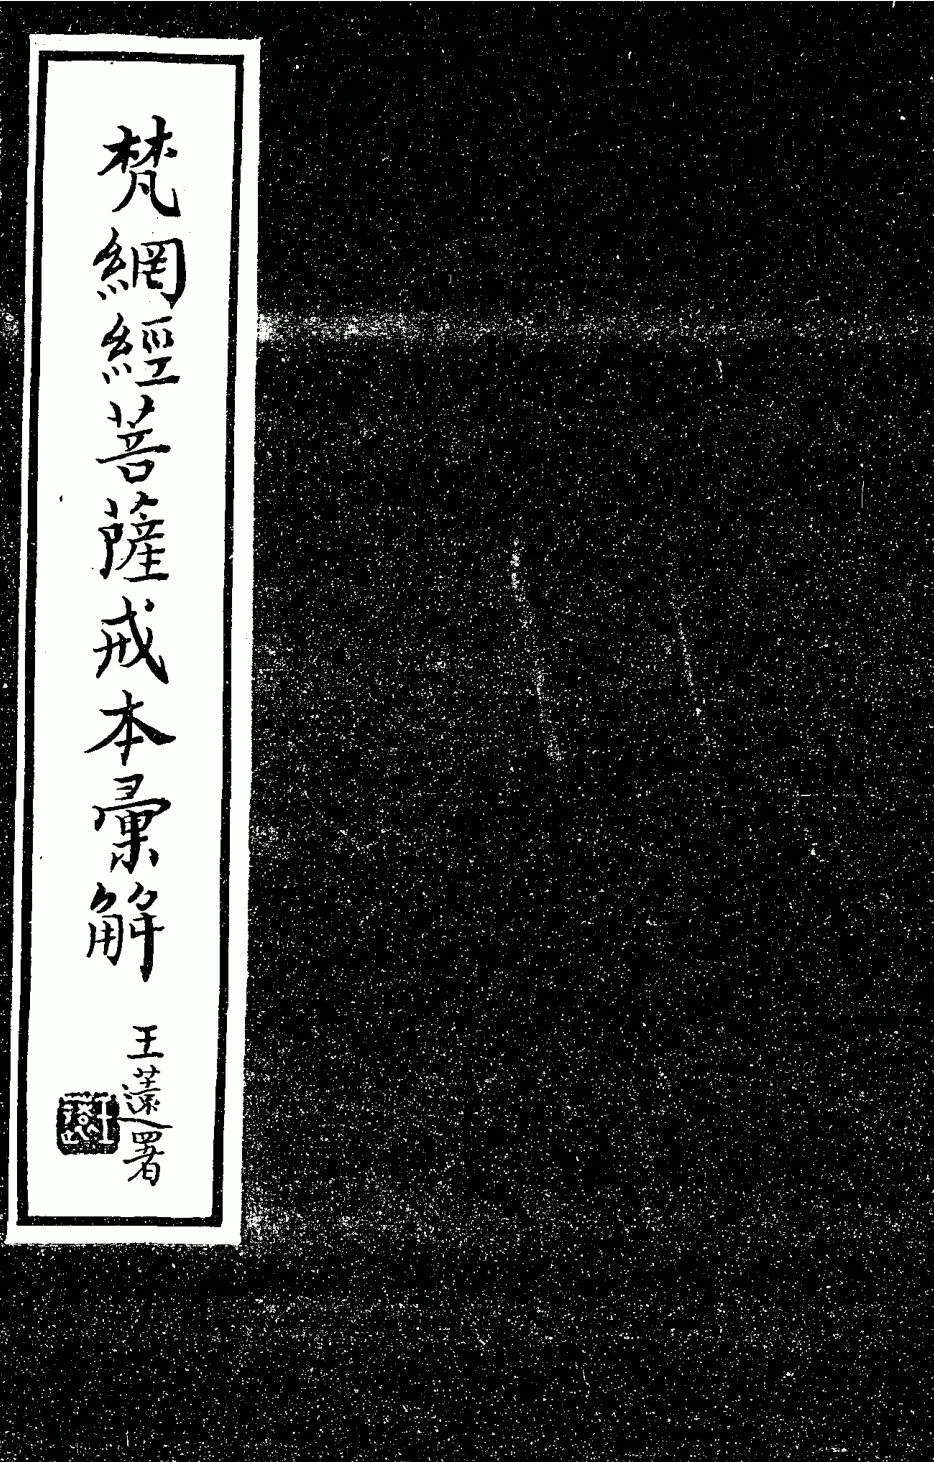 File:Fanwang jing huijie 1938.png